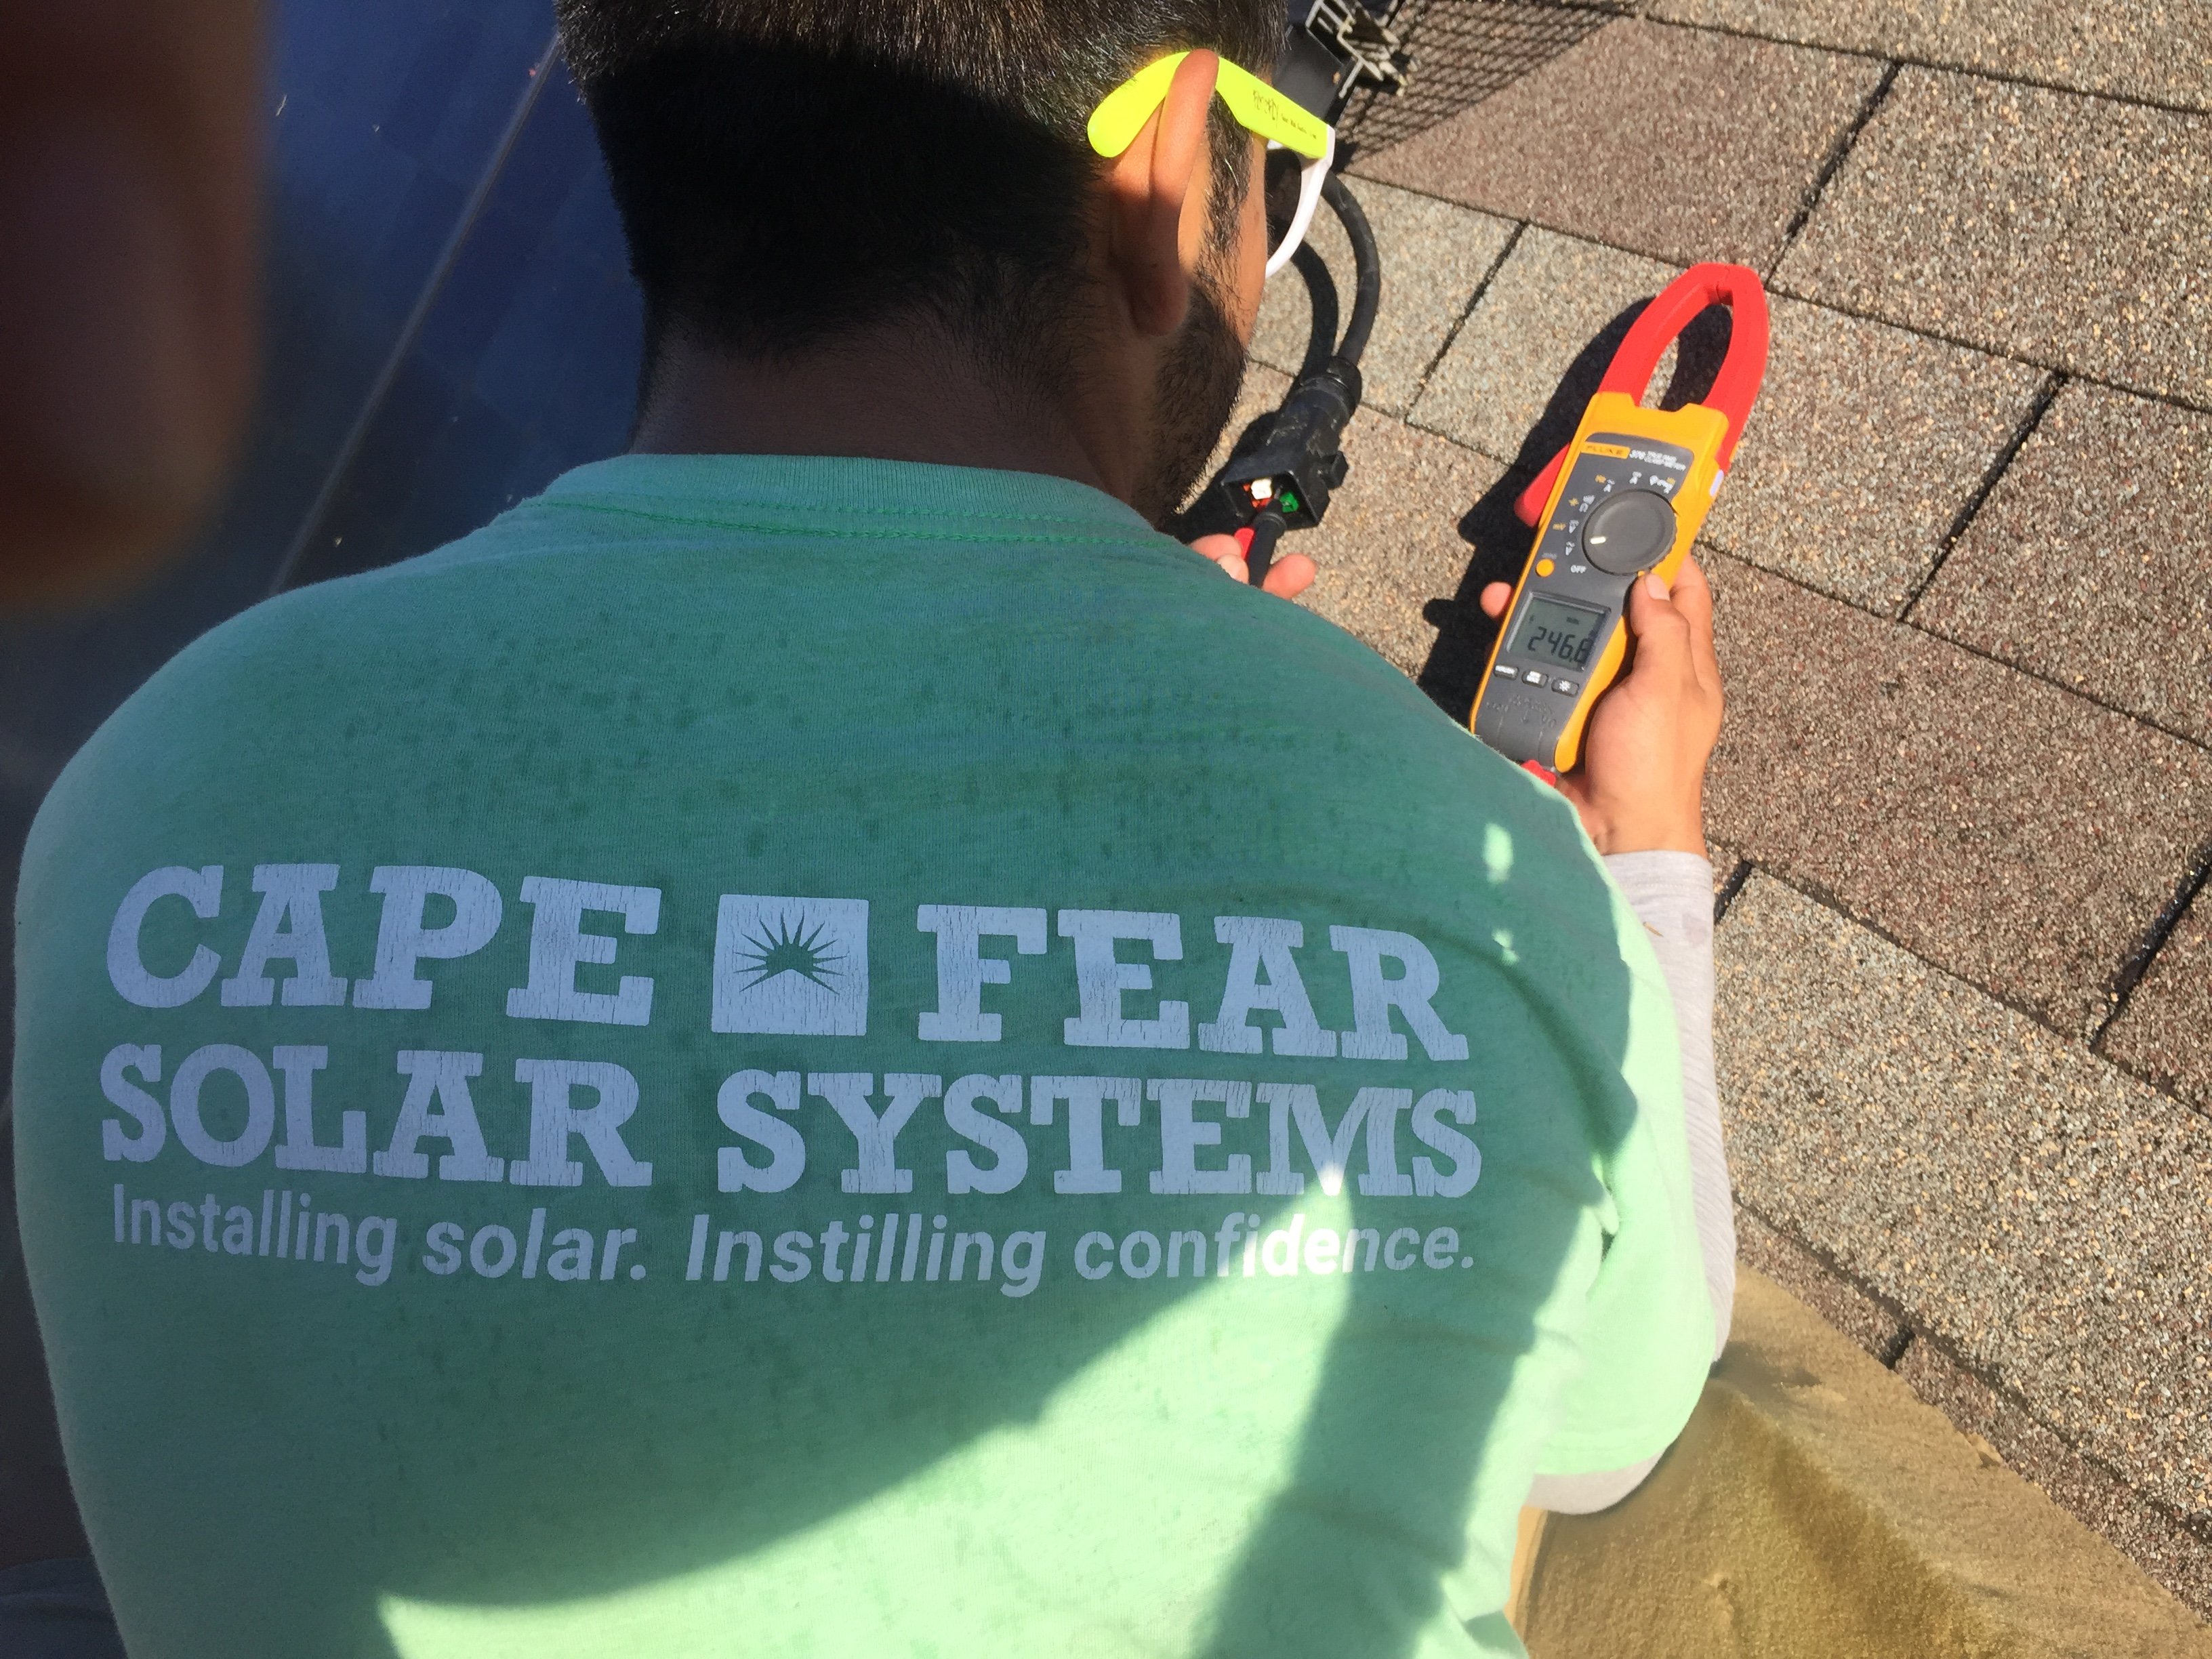 이미지 출처: Cape Fear Solar Systems